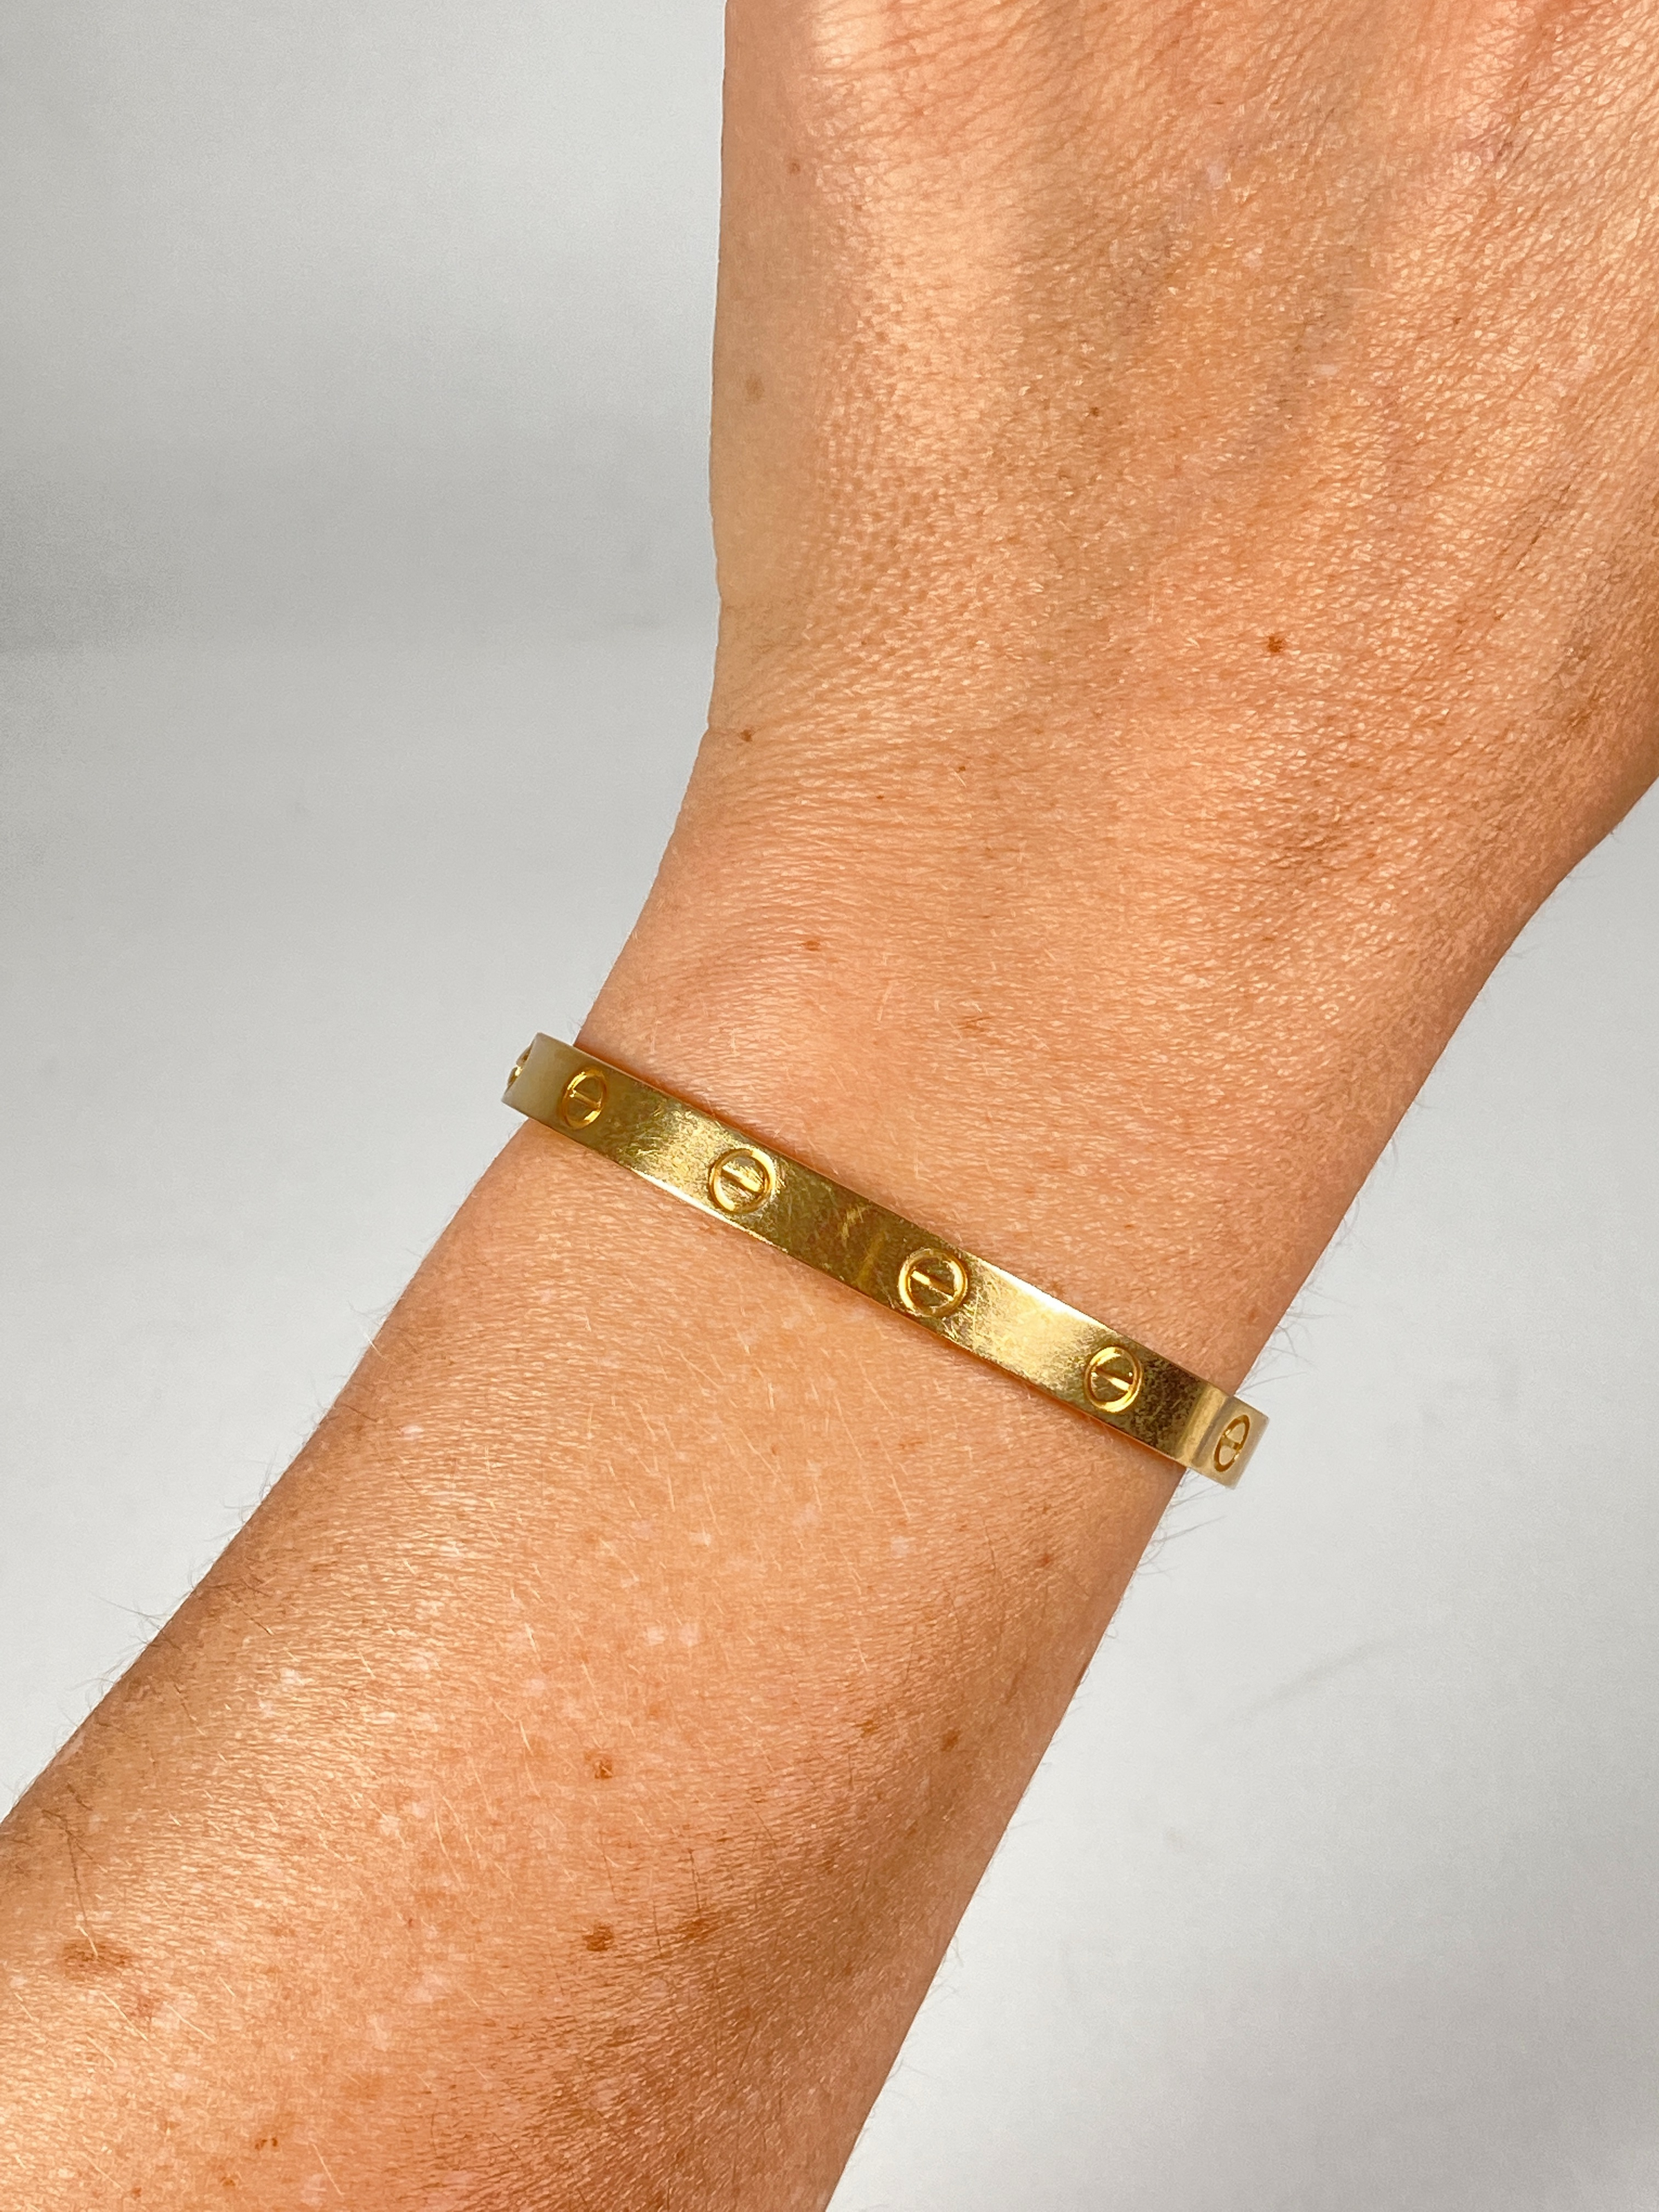 30 Latest Jewelry Bracelets Ideas For Women | Jewelry design, Women jewelry,  Fine jewelry